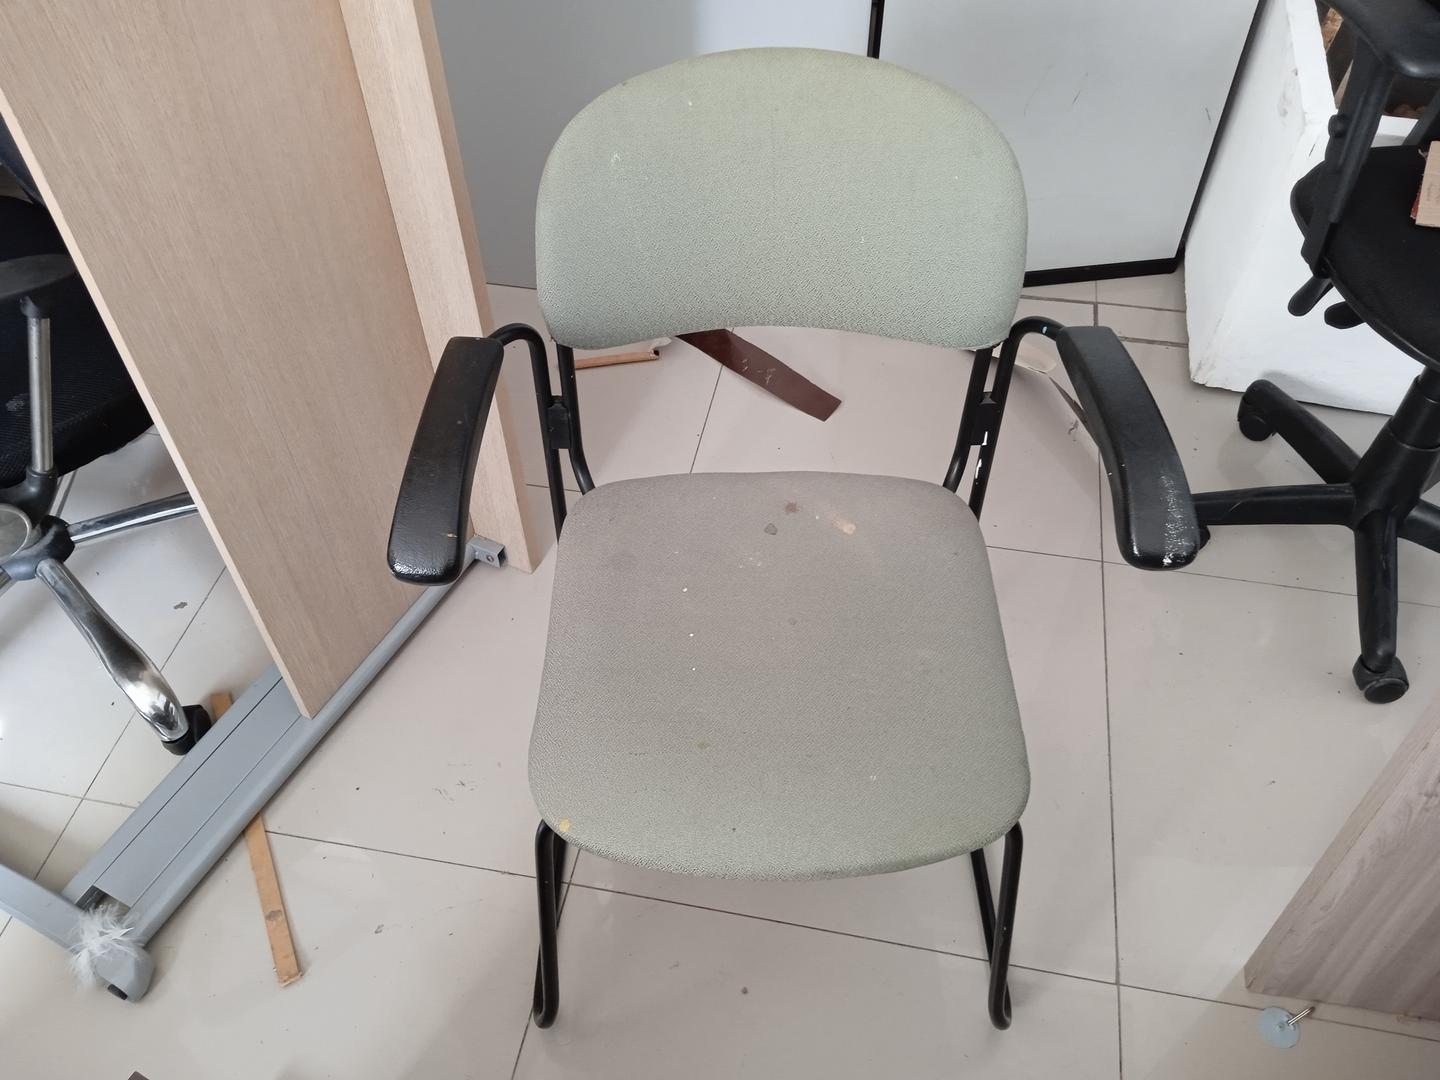 Cadeira fixa estofada c/ braços em Estofado / Tecido Cinza 80 cm x 60 cm x 56 cm